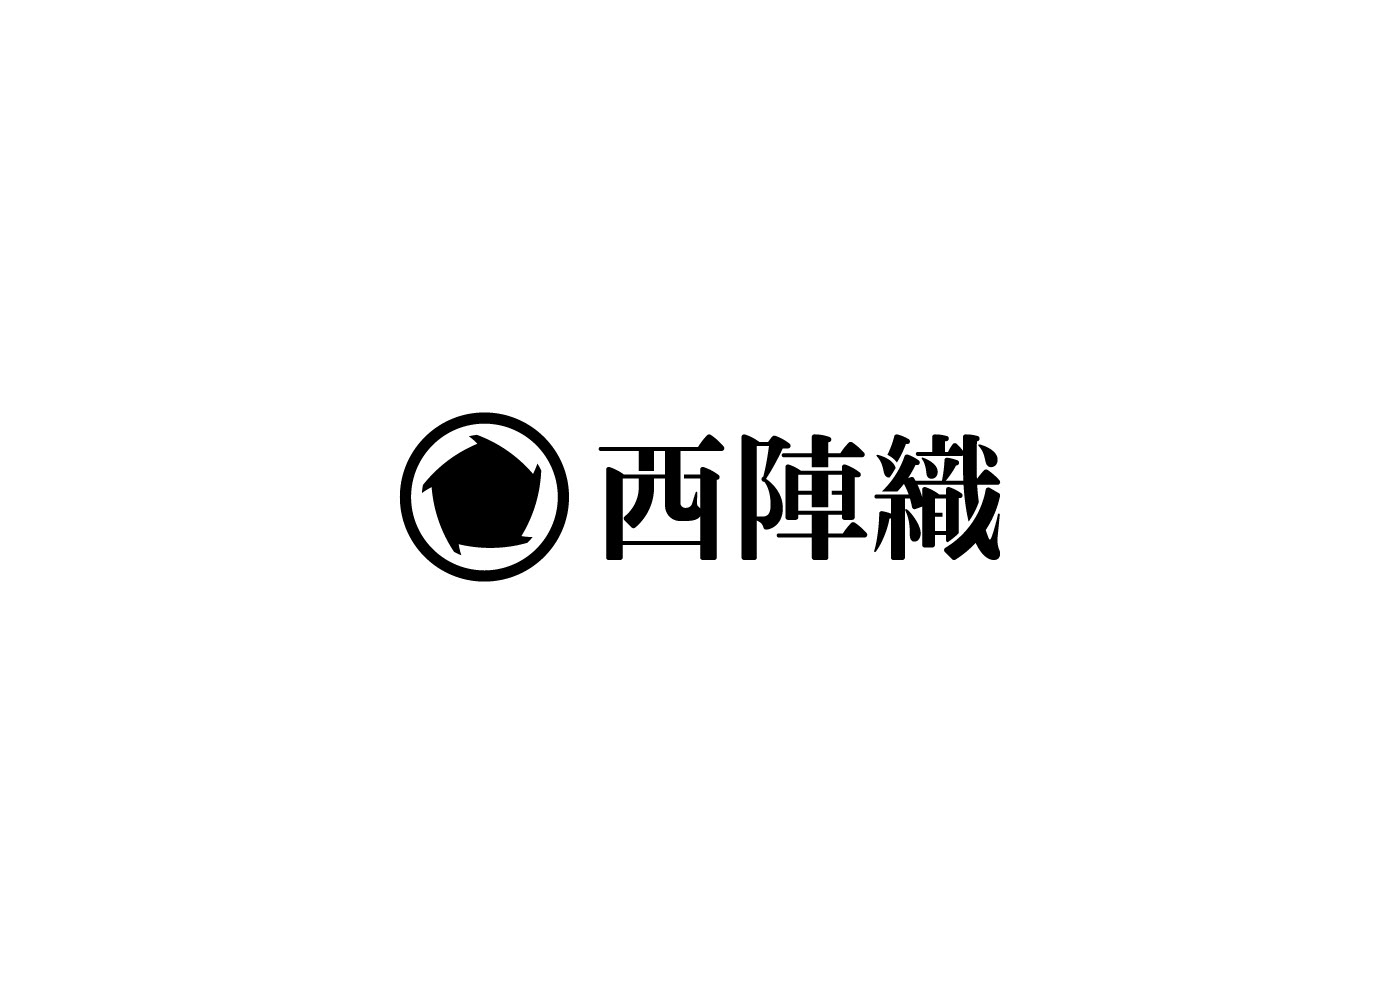 日本hiromi maeo标志设计作品